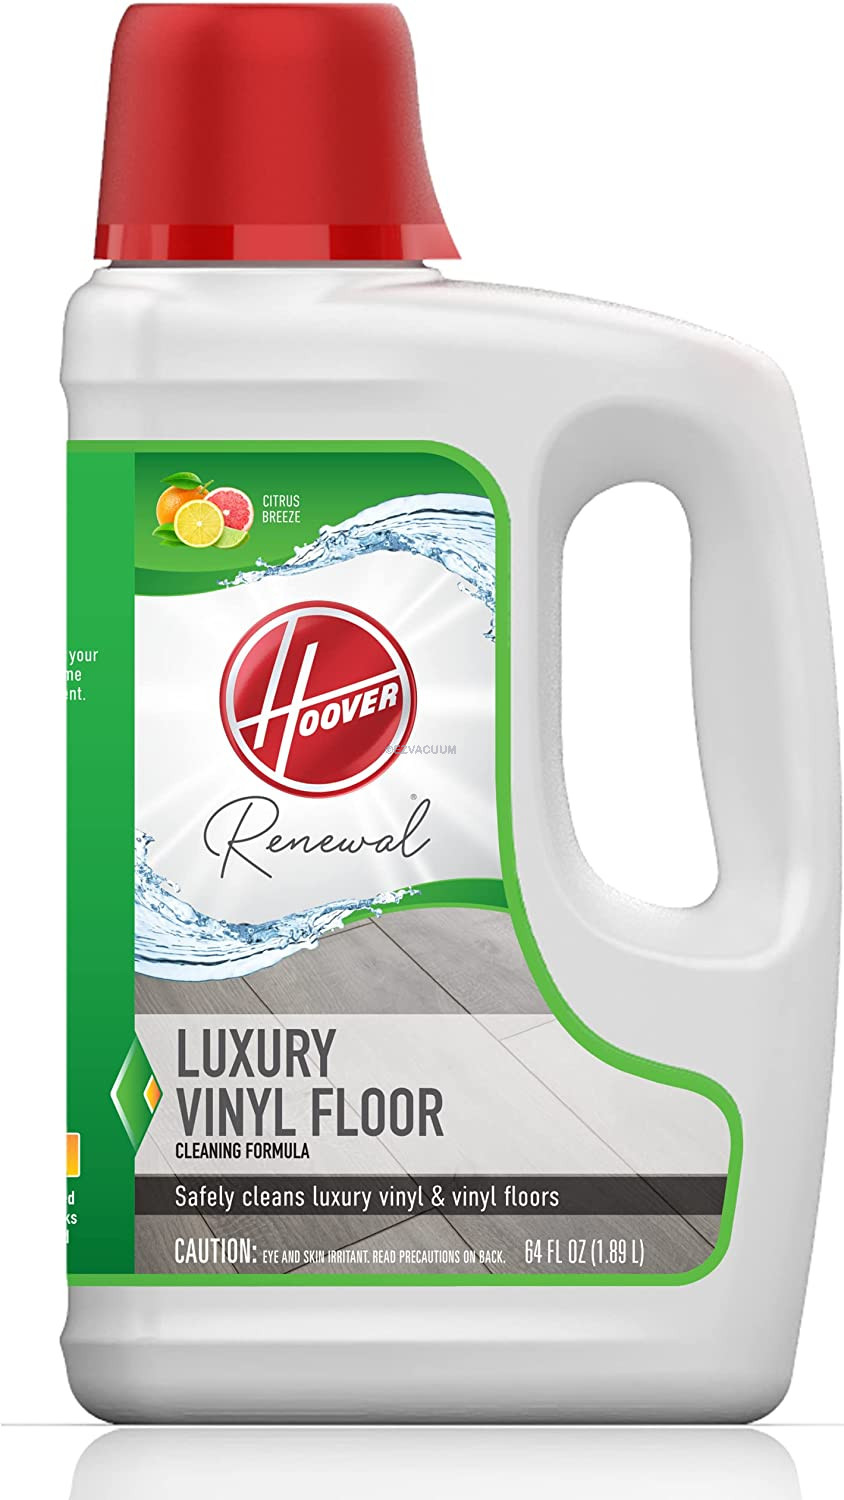 Hoover Renewal Luxury Vinyl Floor Cleaning Formula Solution 64